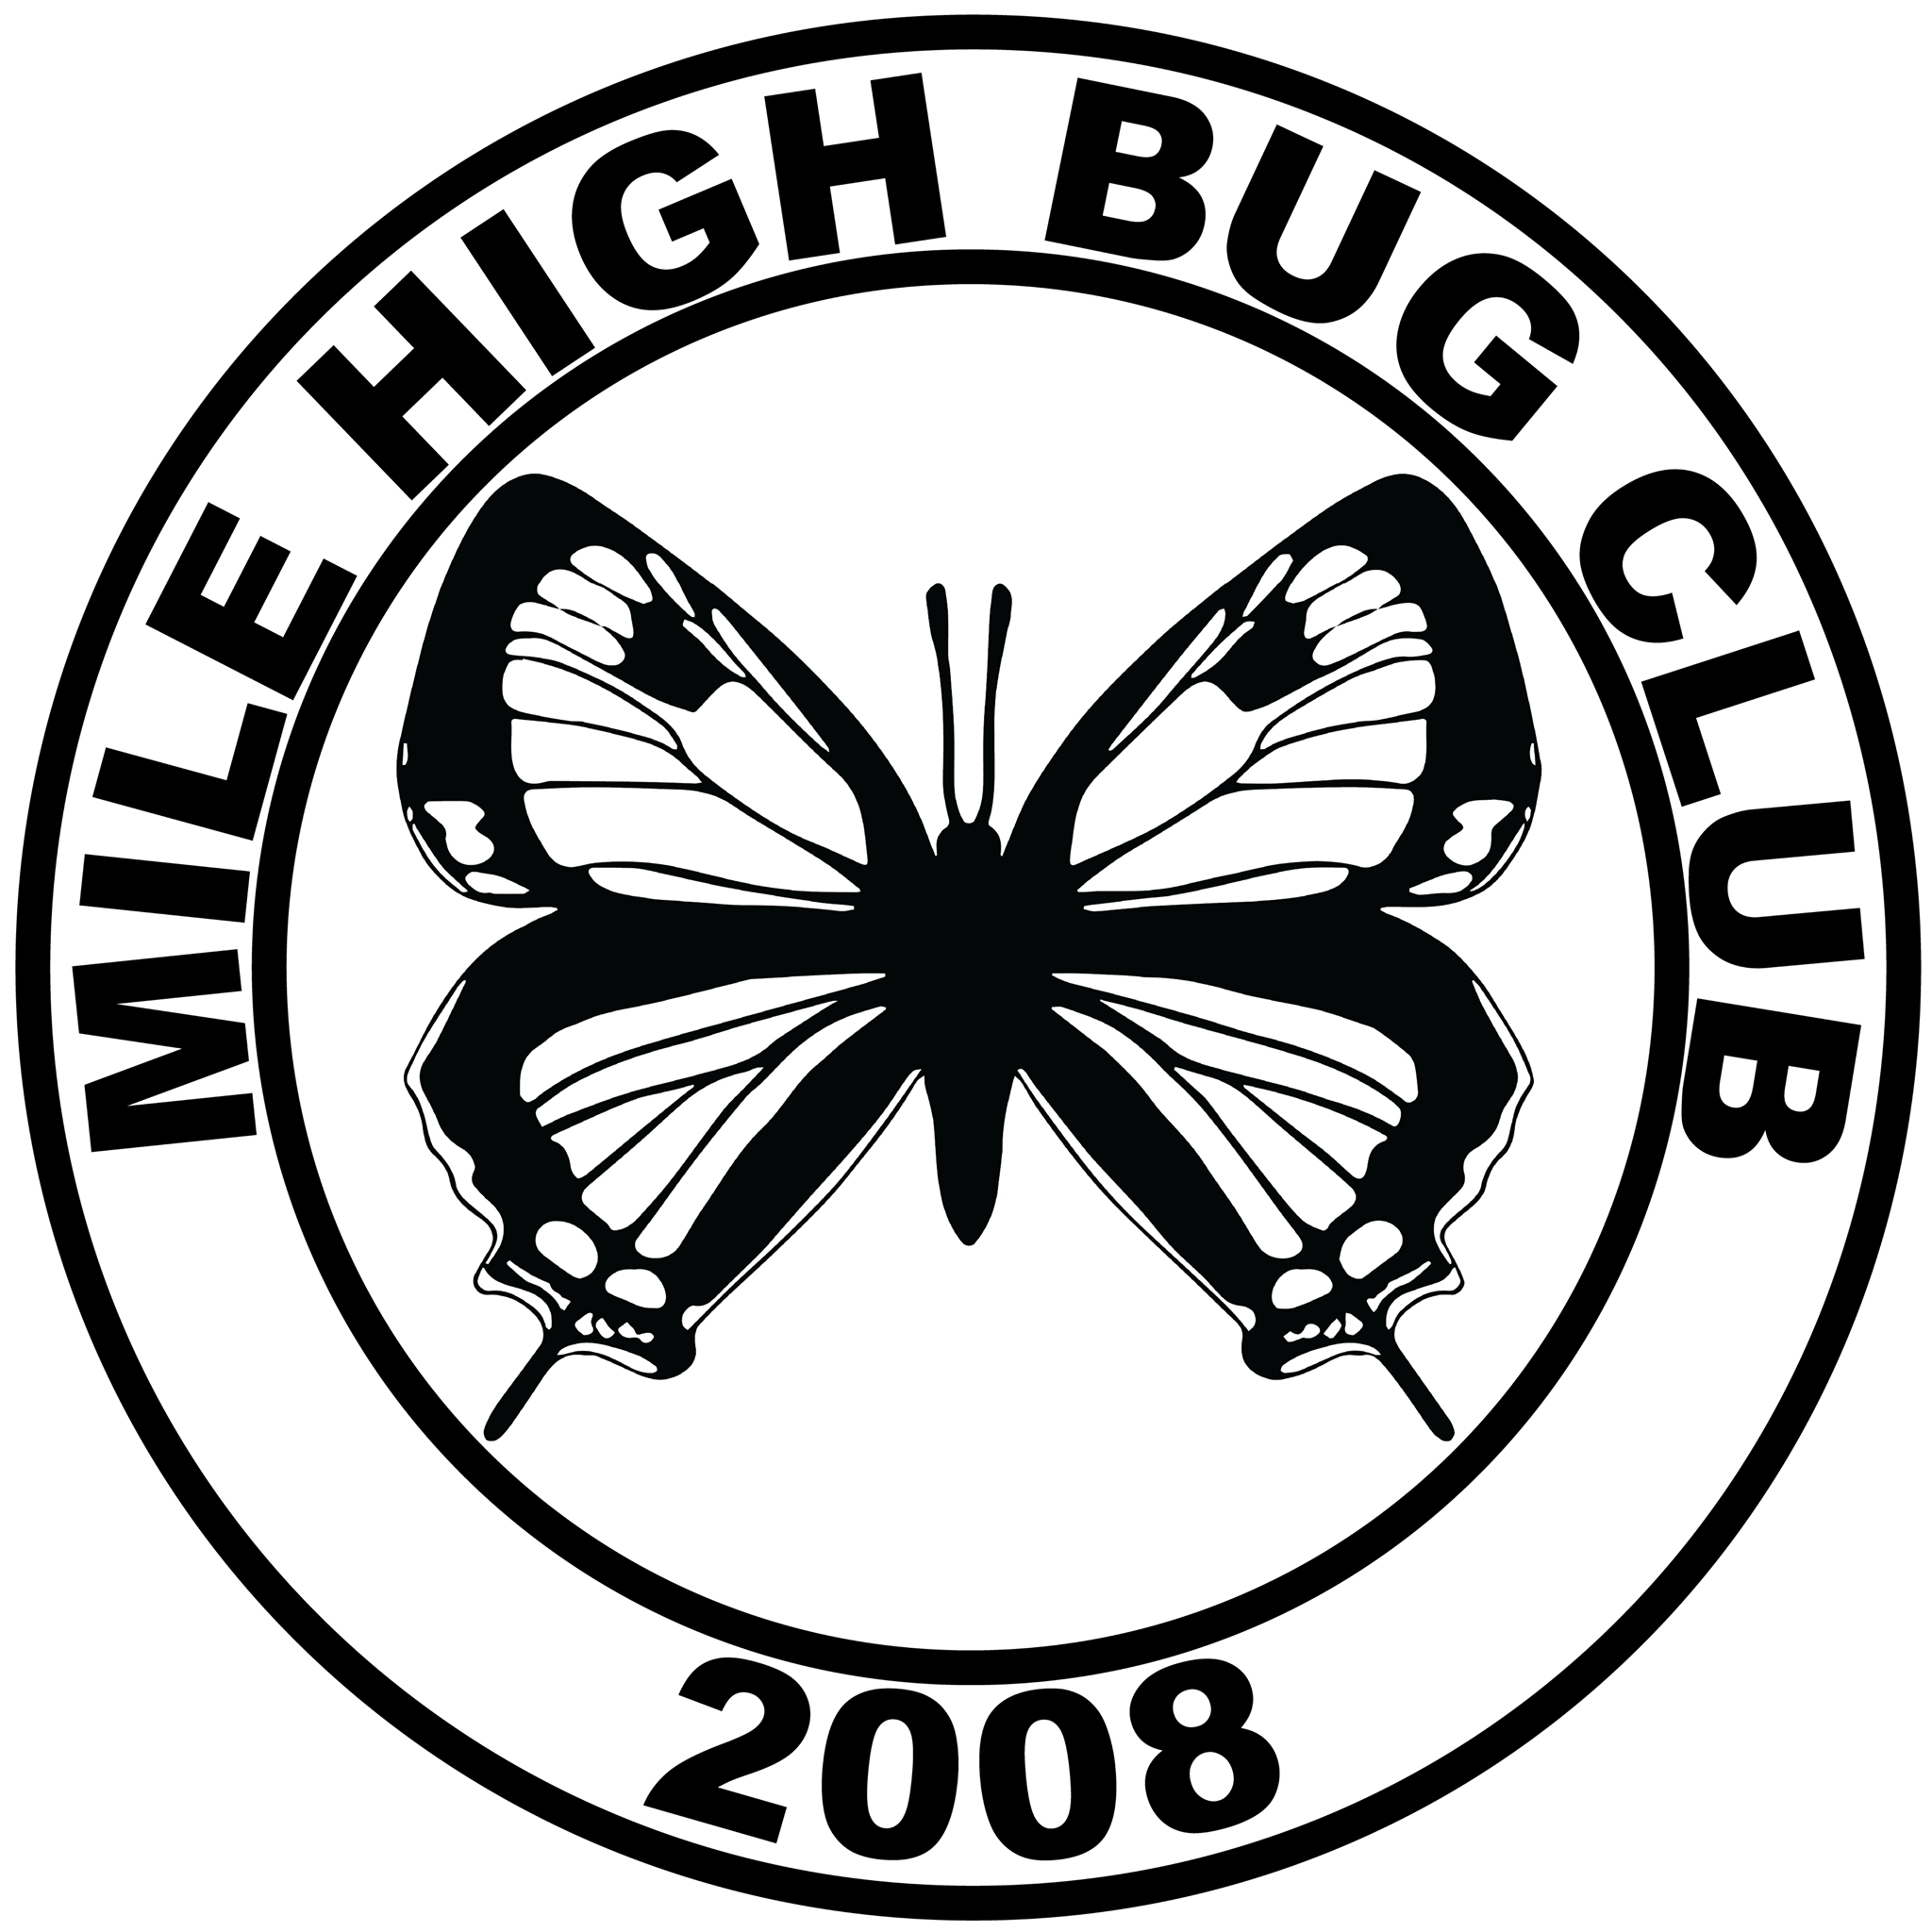 Mile High Bug Club logo